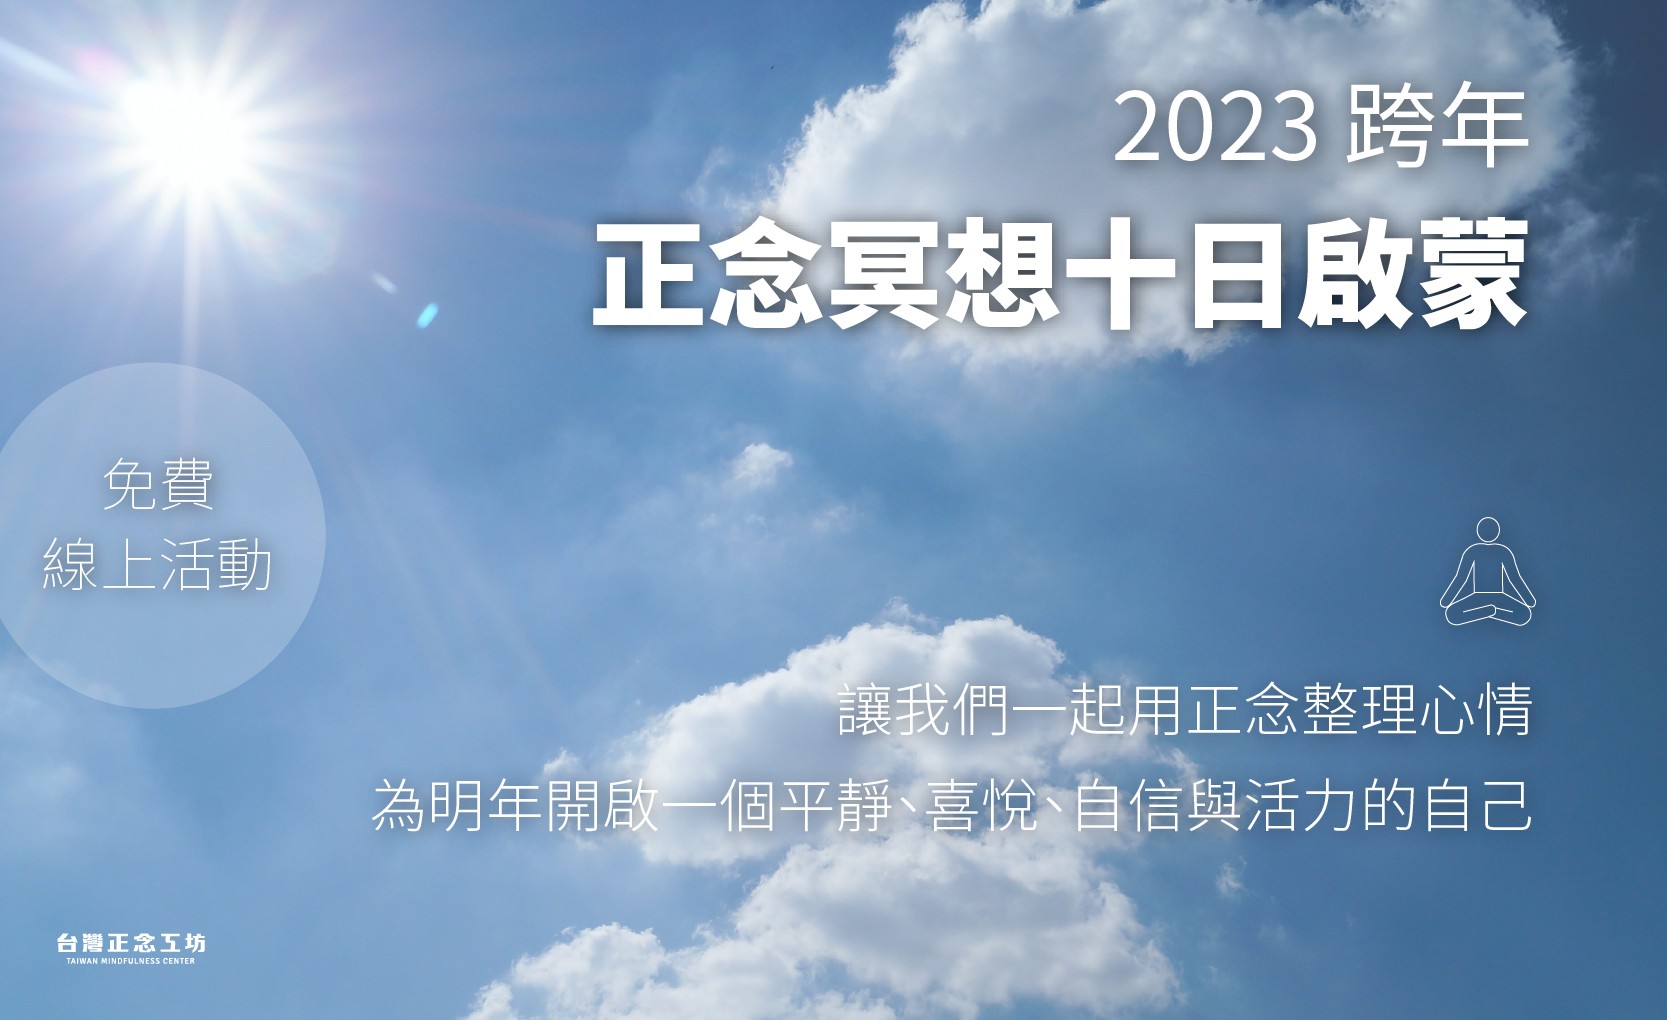 2023 跨年正念冥想十日啟蒙